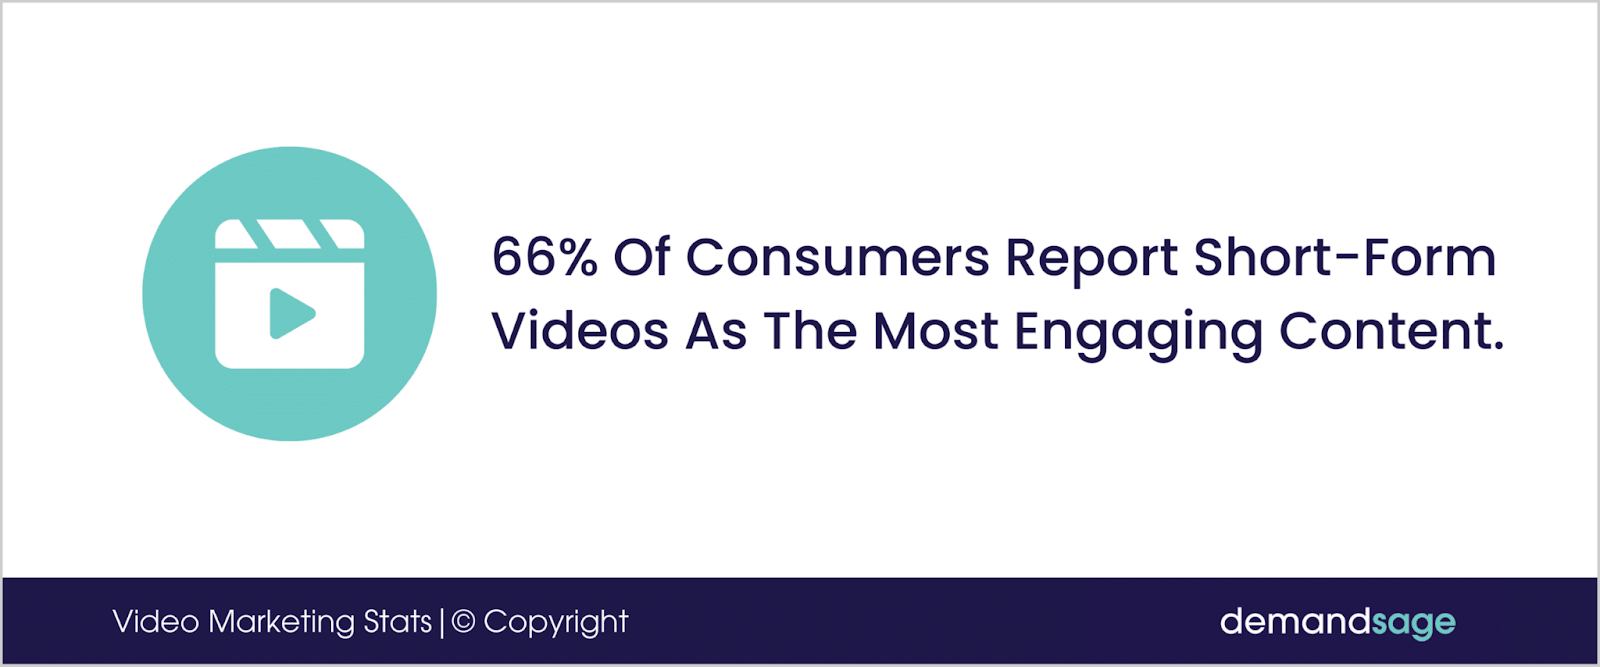 shorty-form video social media video marketing statistics